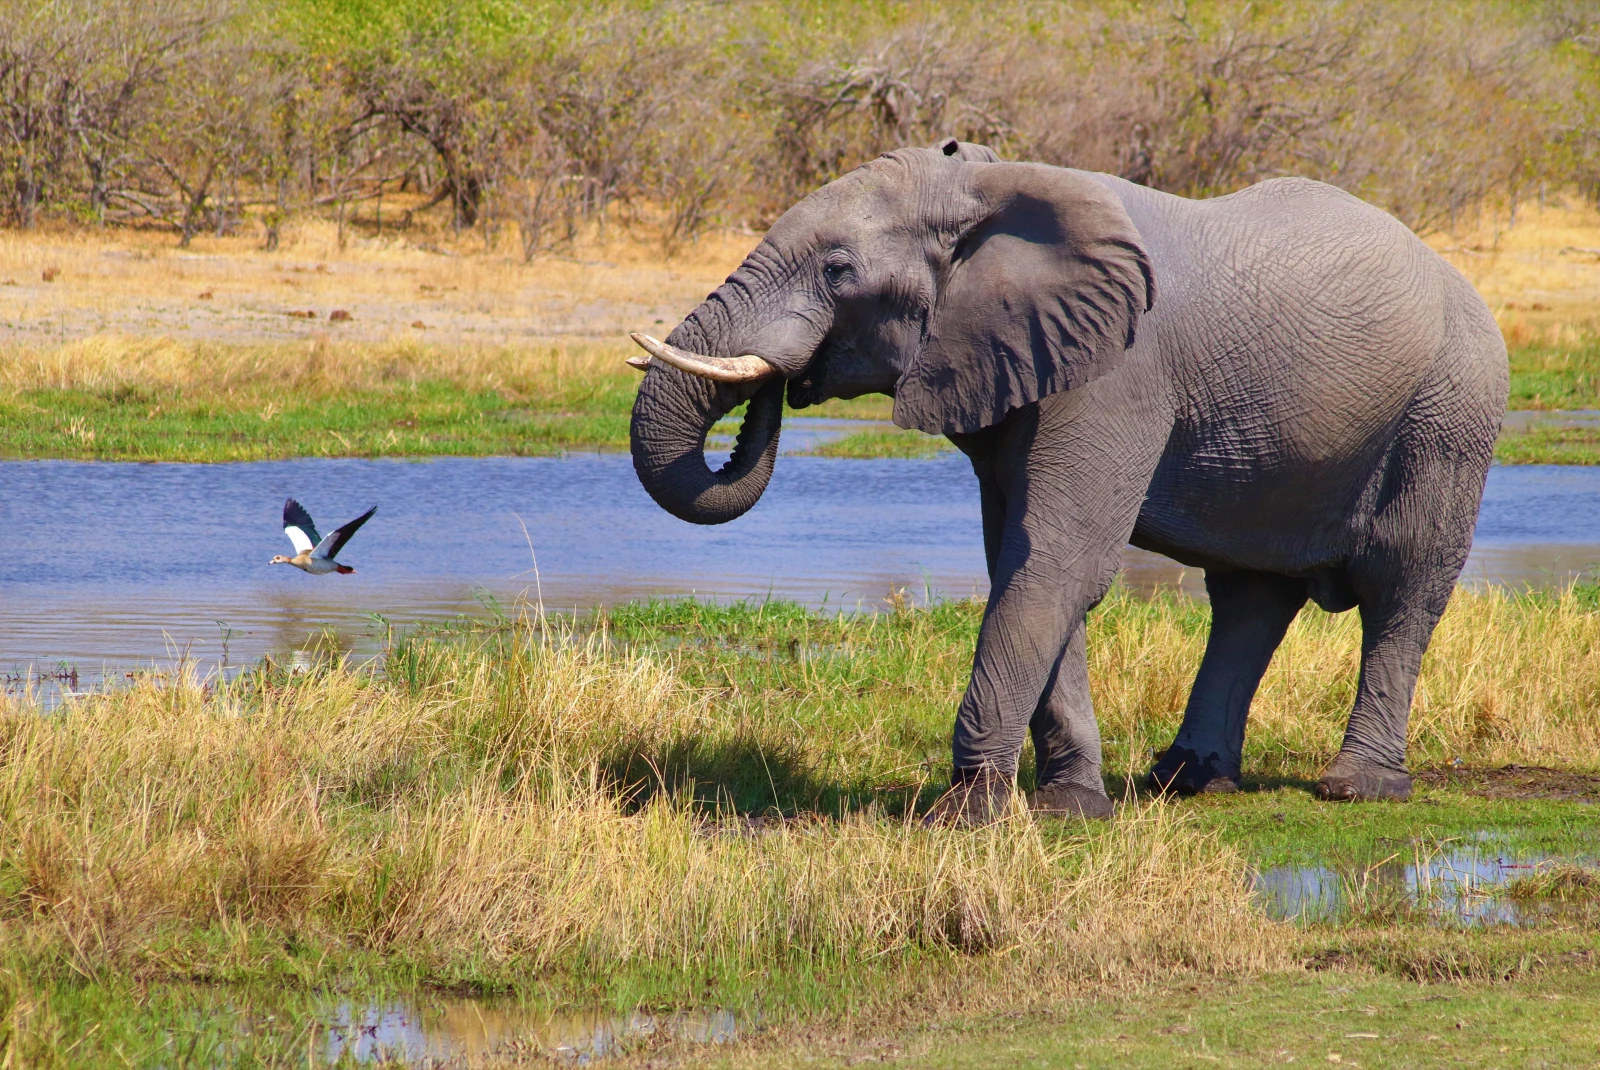 An elephant following a bird